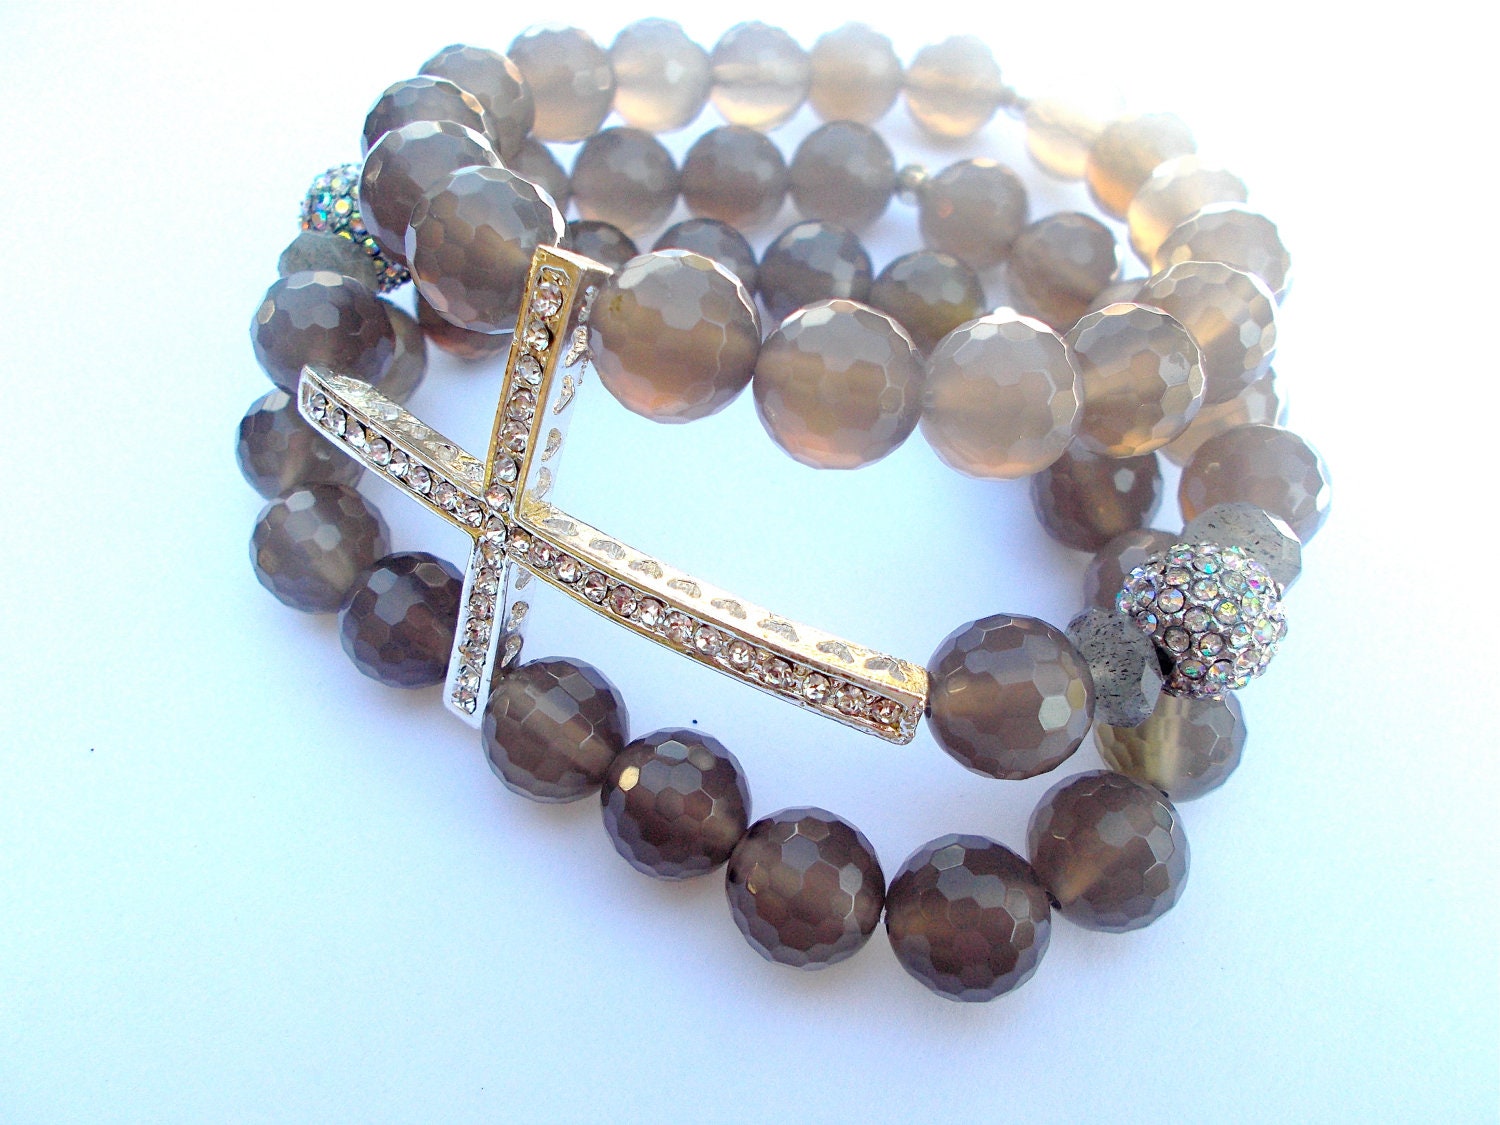 Triple Strand Cross bracelet, Statement Jewelry, Christian, grey agate - grey gemstone